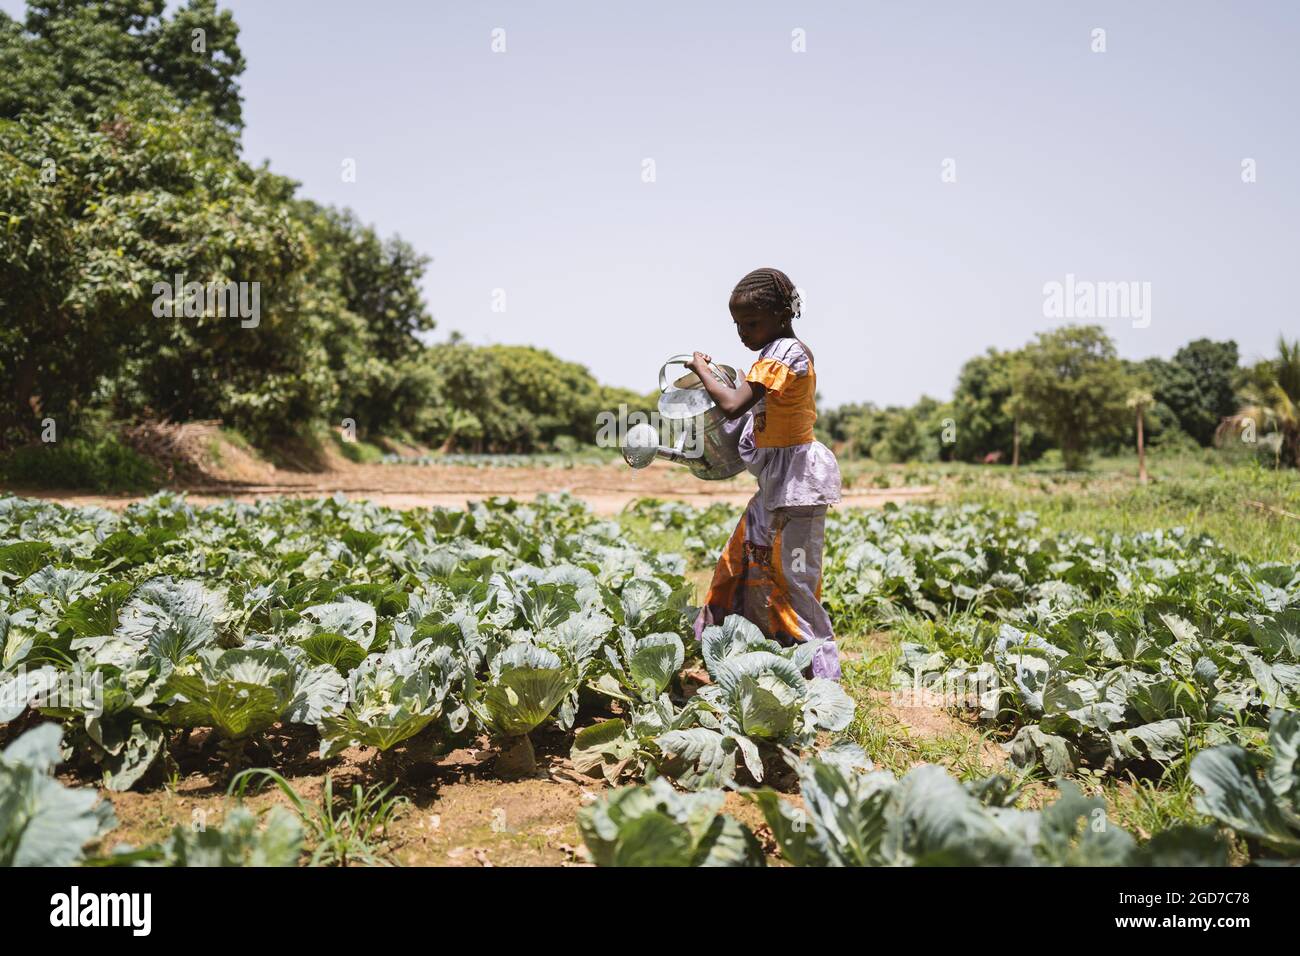 In questa immagine, una piccola ragazza africana nera seria in piedi in un campo di cavolo sotto un cielo blu caldo sta sollevando una lattina pesante di innaffiatura del metallo Foto Stock